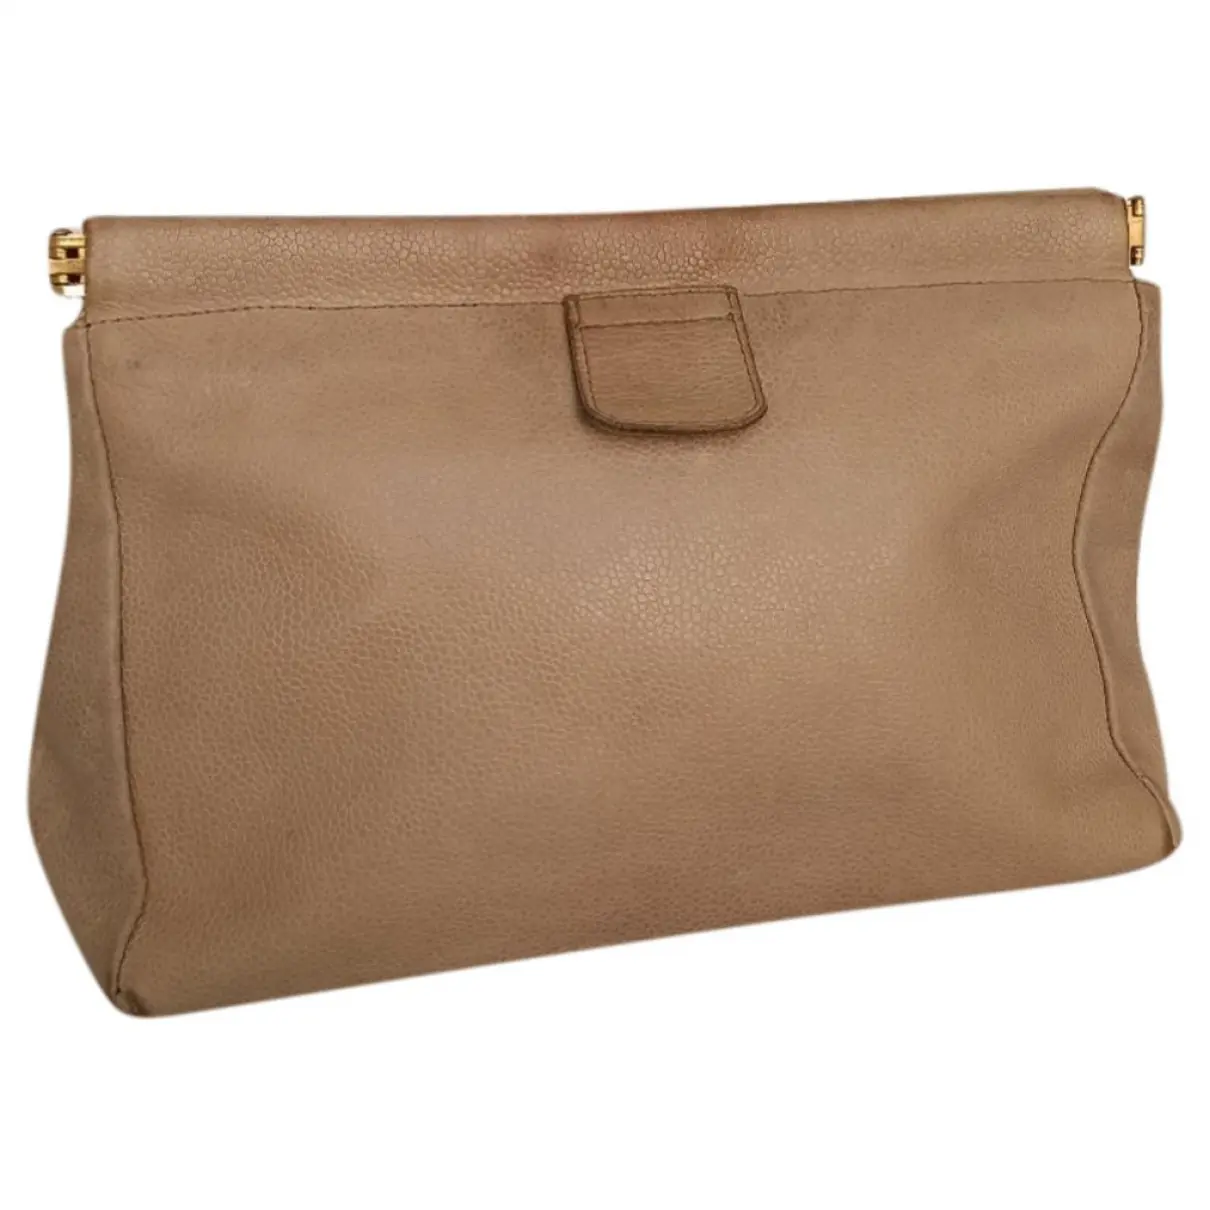 Leather clutch bag Sonia Rykiel - Vintage